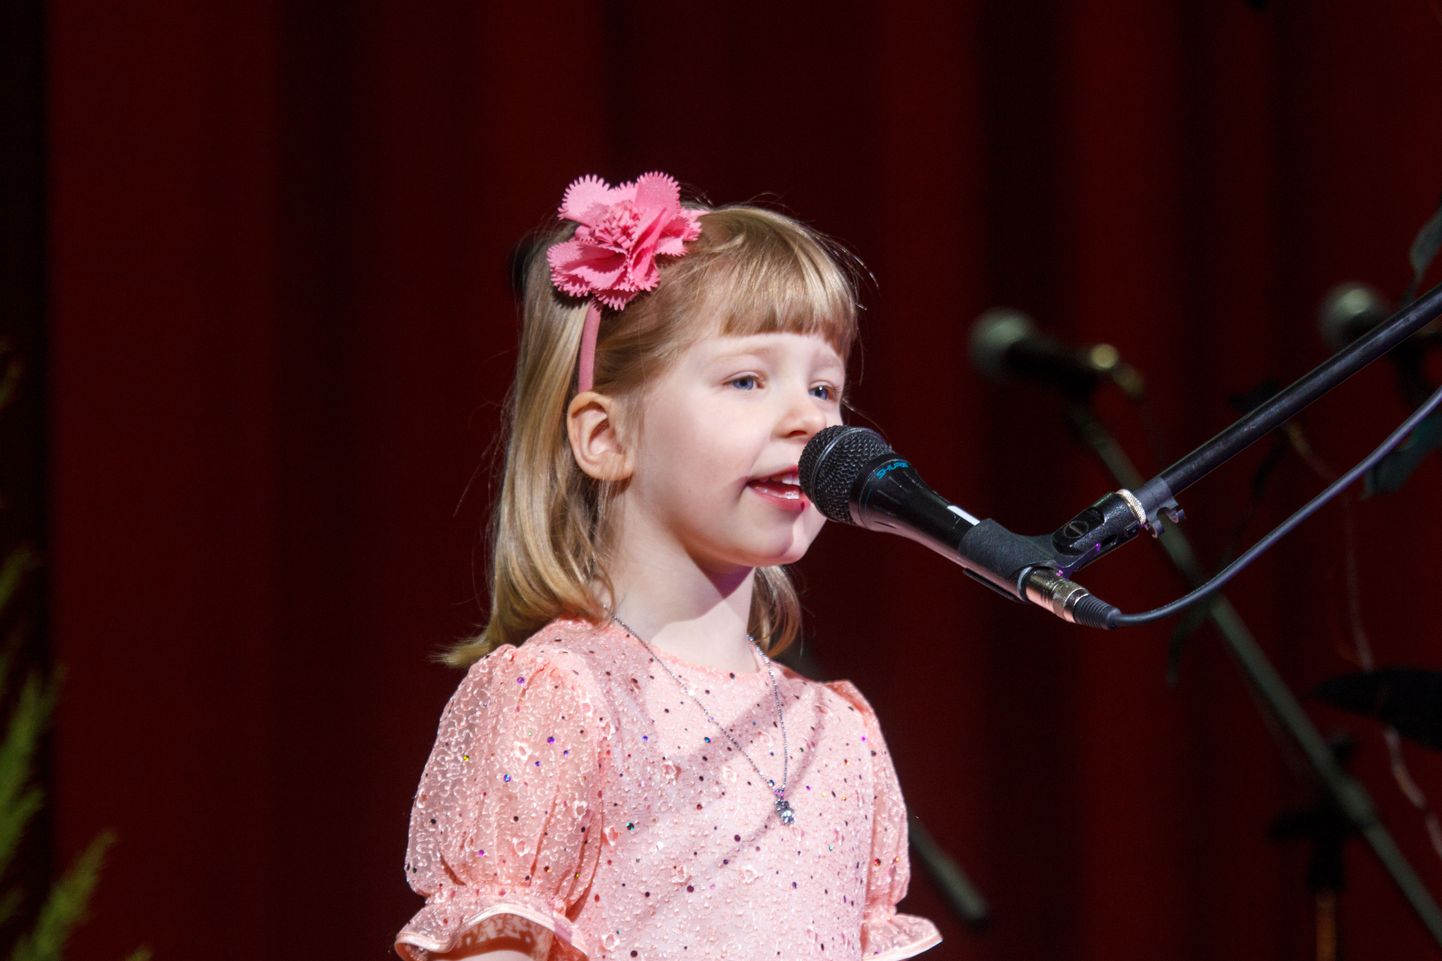 Eelmisel aastal toimunud Valgamaa laste lauluvõistlusel võitis kõige nooremate laulusolistide hulgas Valga tüdruk Anette Lee, kelle juhendaja oli Age Ruuse. Sel aastal esitas tüdruk Valga linna lauluvõistlusel laulu «Väike poni».